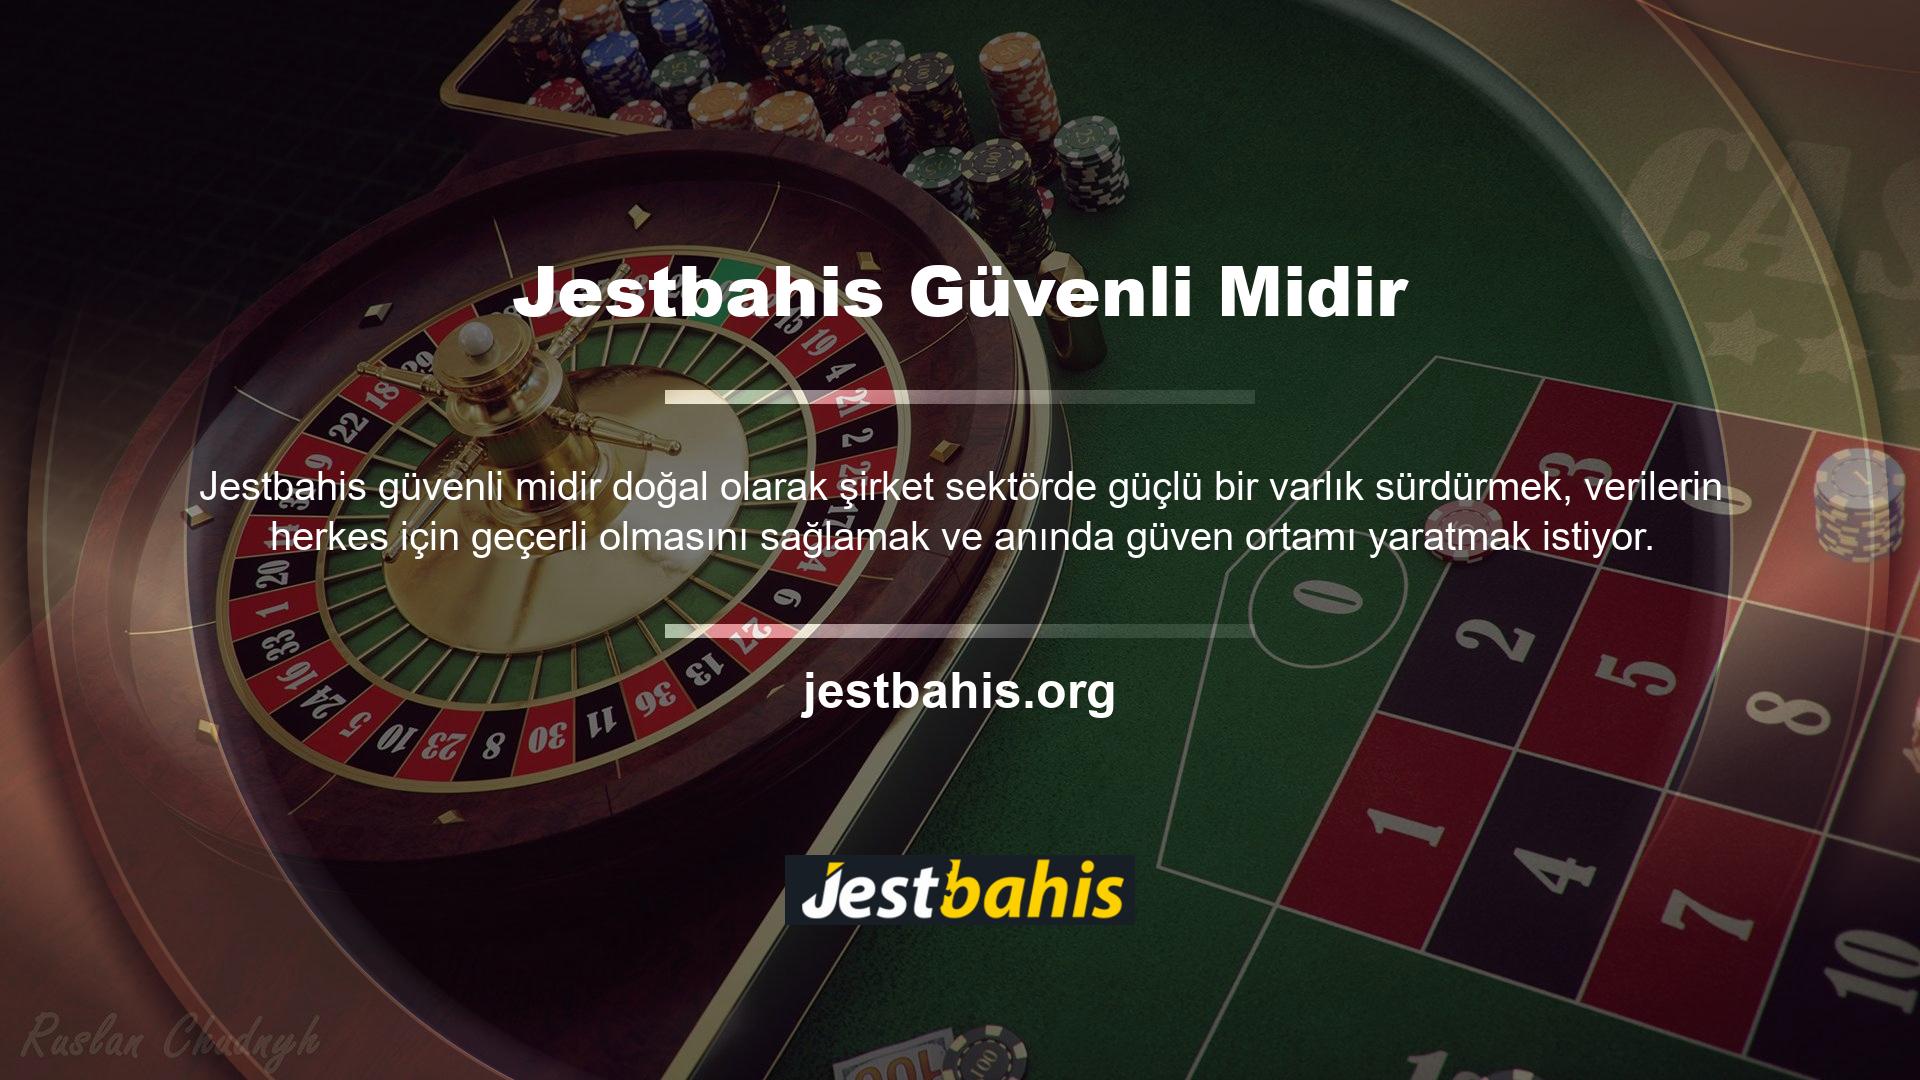 Türkiye'de uzun yıllardır çeşitli değerler insanların ilgisini çekmeye devam ediyor ancak internette spor, casino gibi önemli alanlara kayabilir